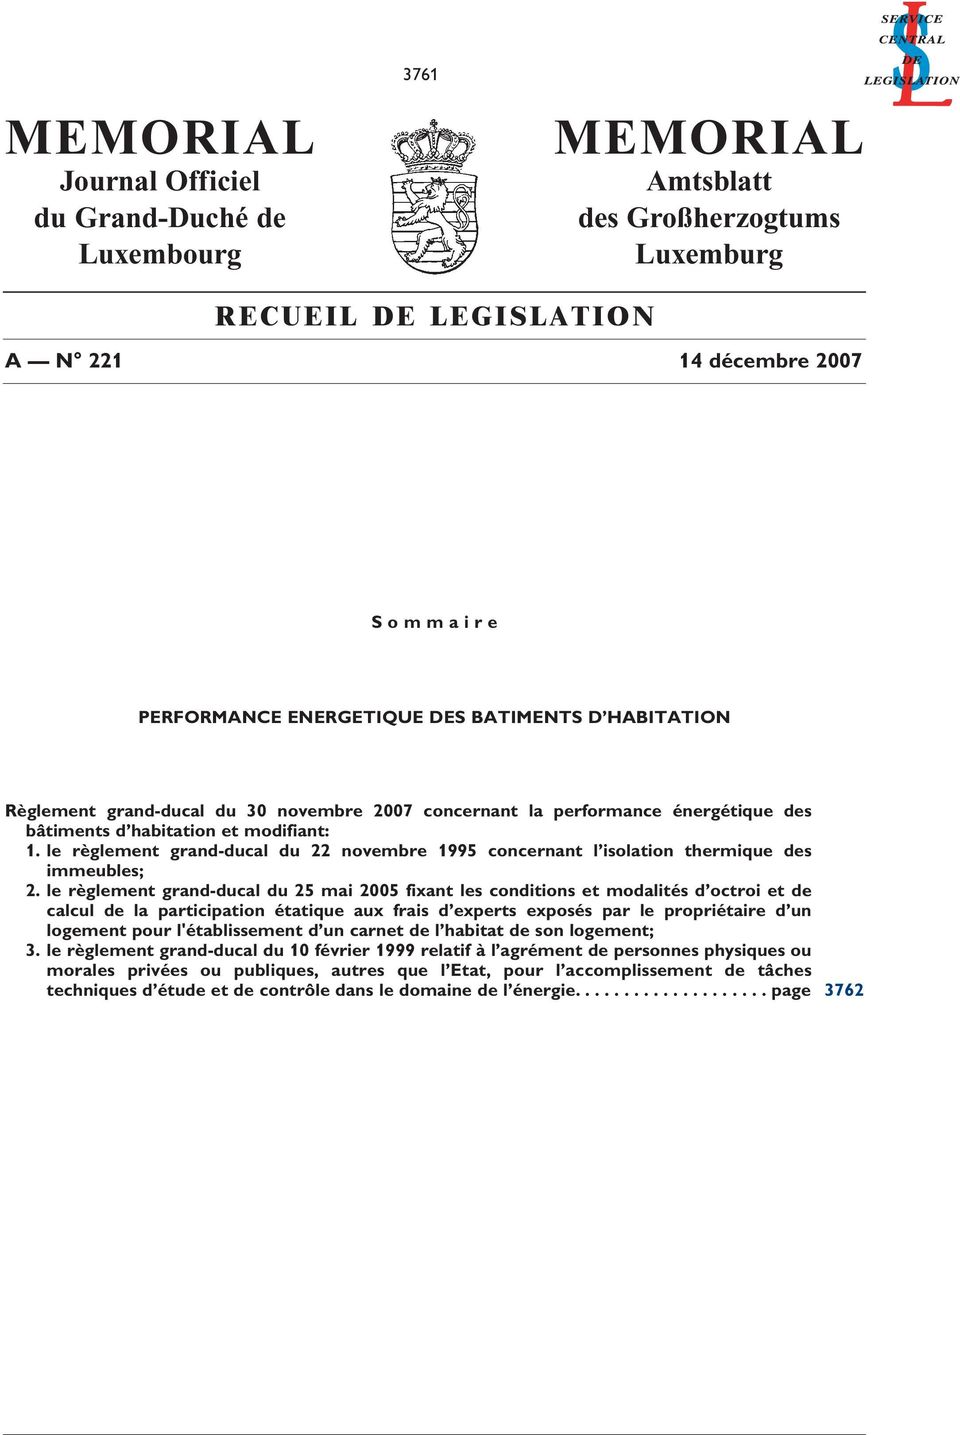 le règlement grand-ducal du 22 novembre 1995 concernant l solaton thermque des mmeubles; 2.